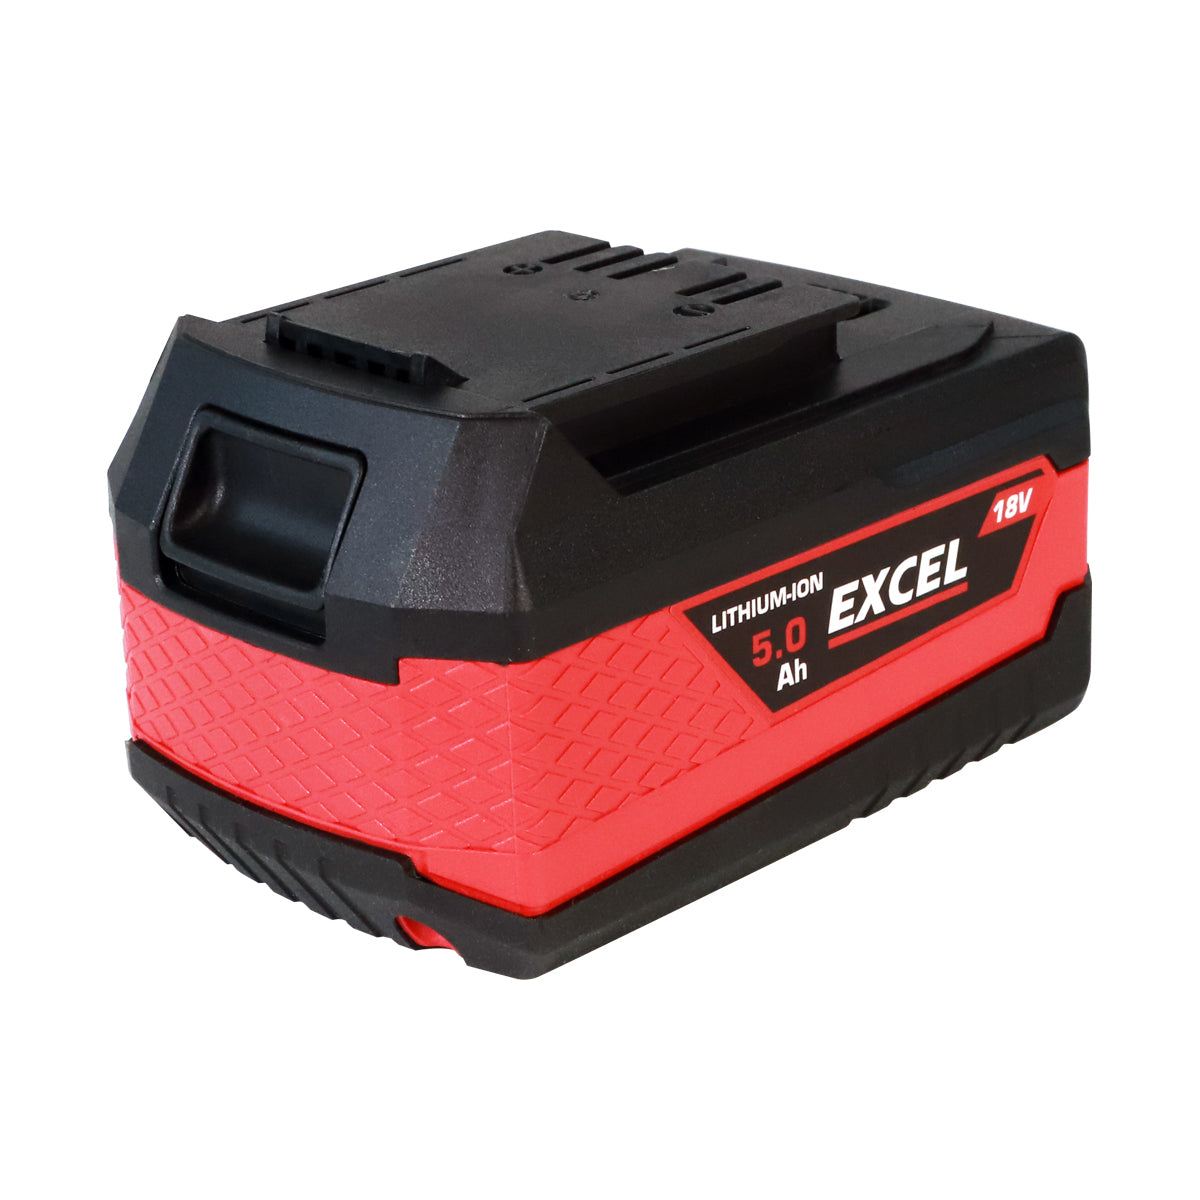 Excel 18V Grass Trimmer & Leaf Blower 2 x 5.0Ah Batteries & Charger EXL14993